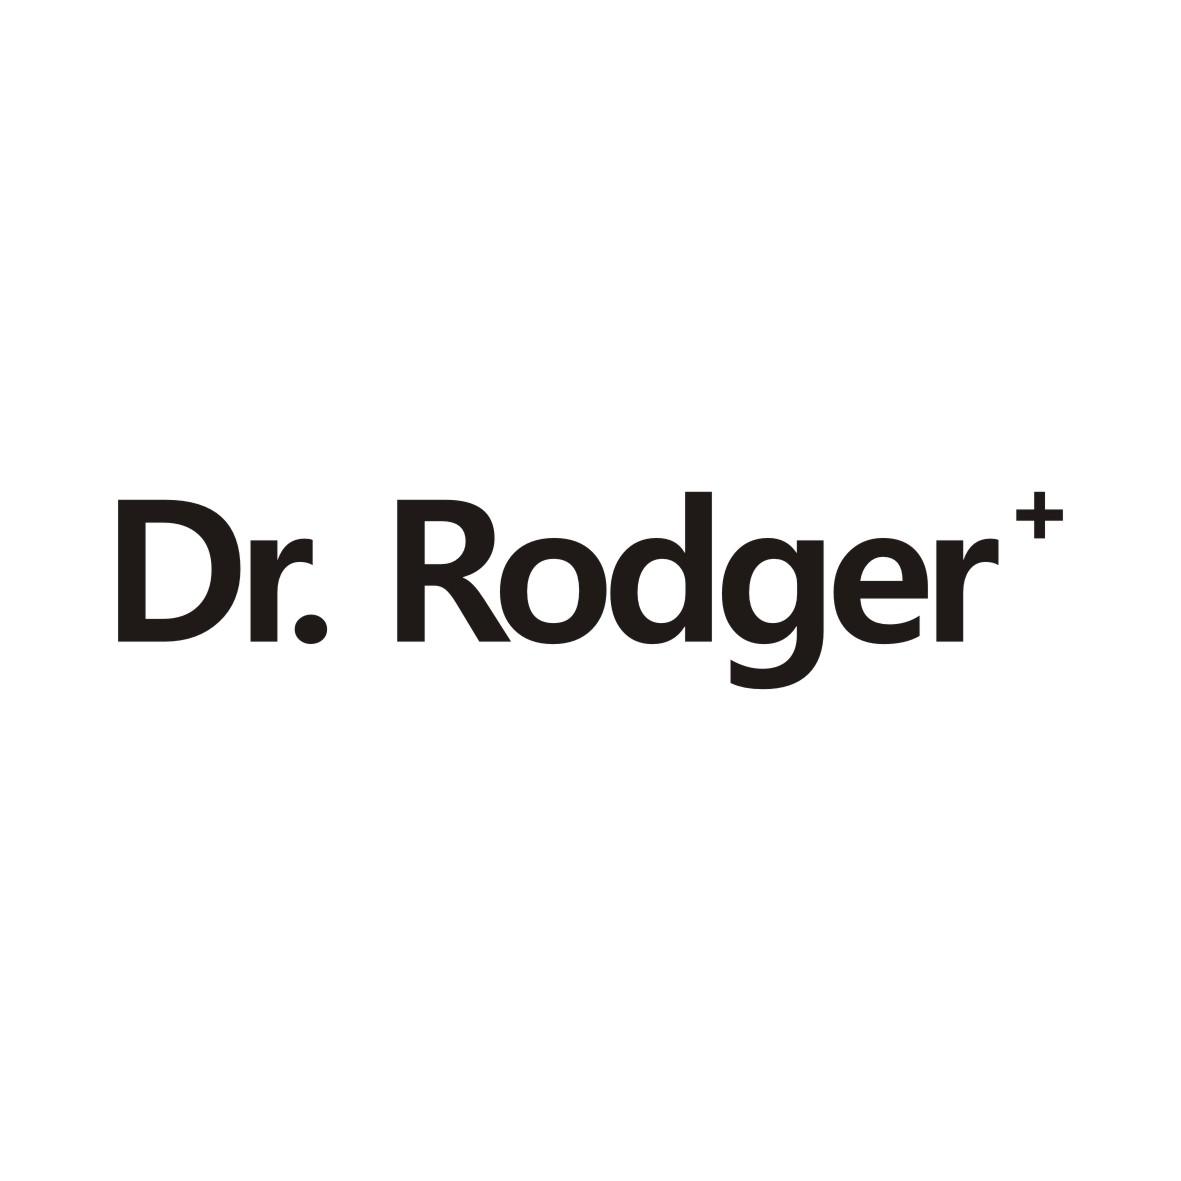 10类-医疗器械DR.RODGER+商标转让